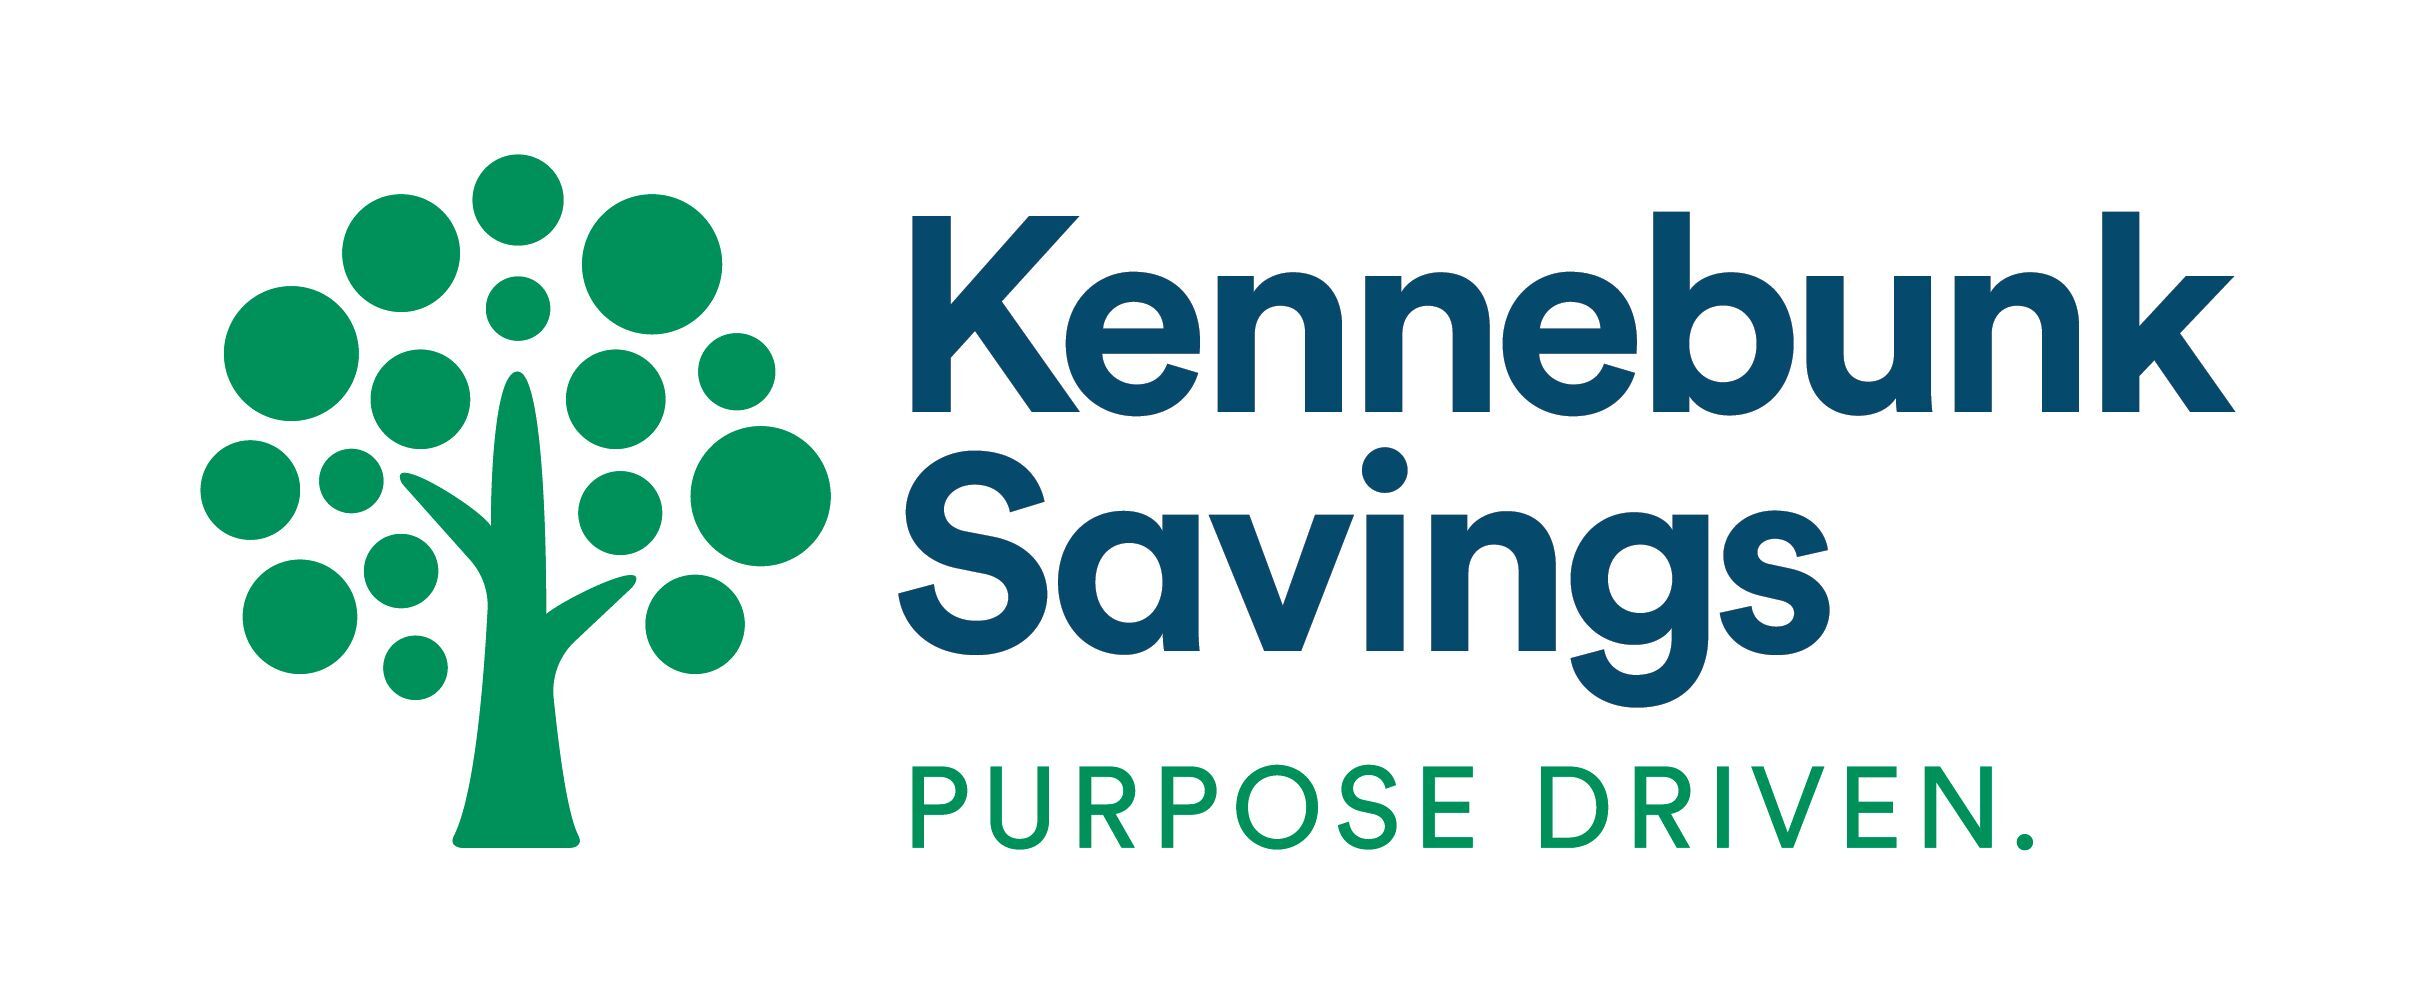 Kennebunk Savings